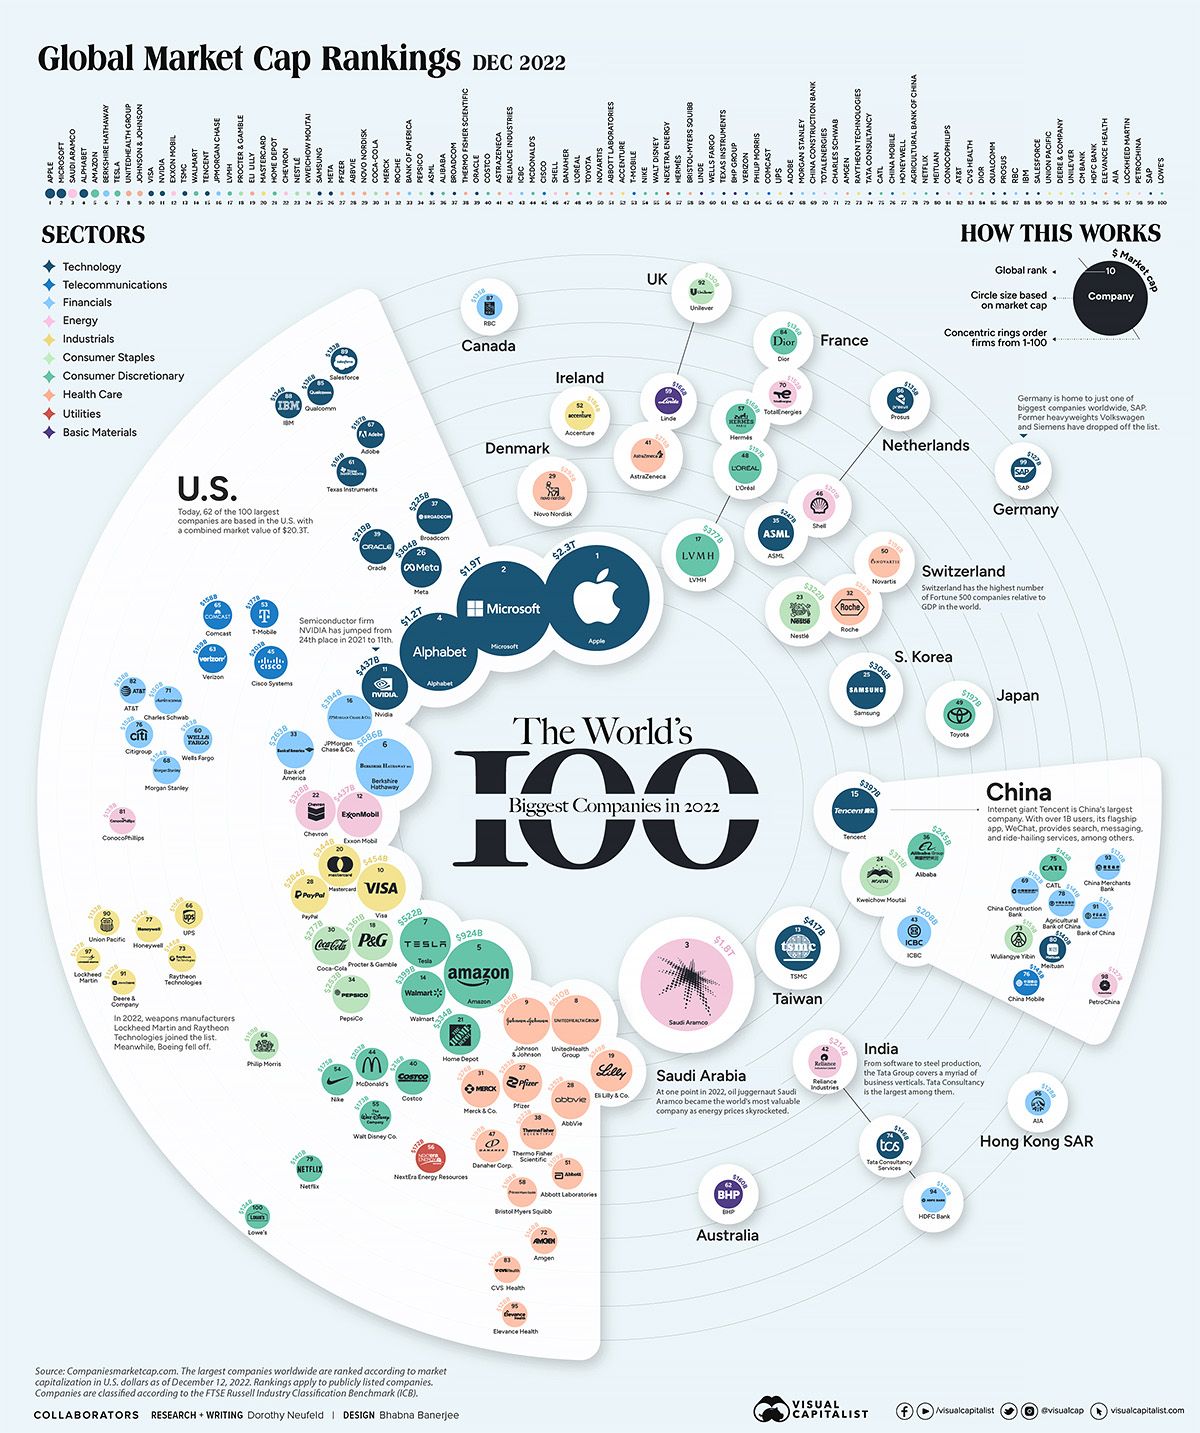 Global Investor 100 2022: The full ranking